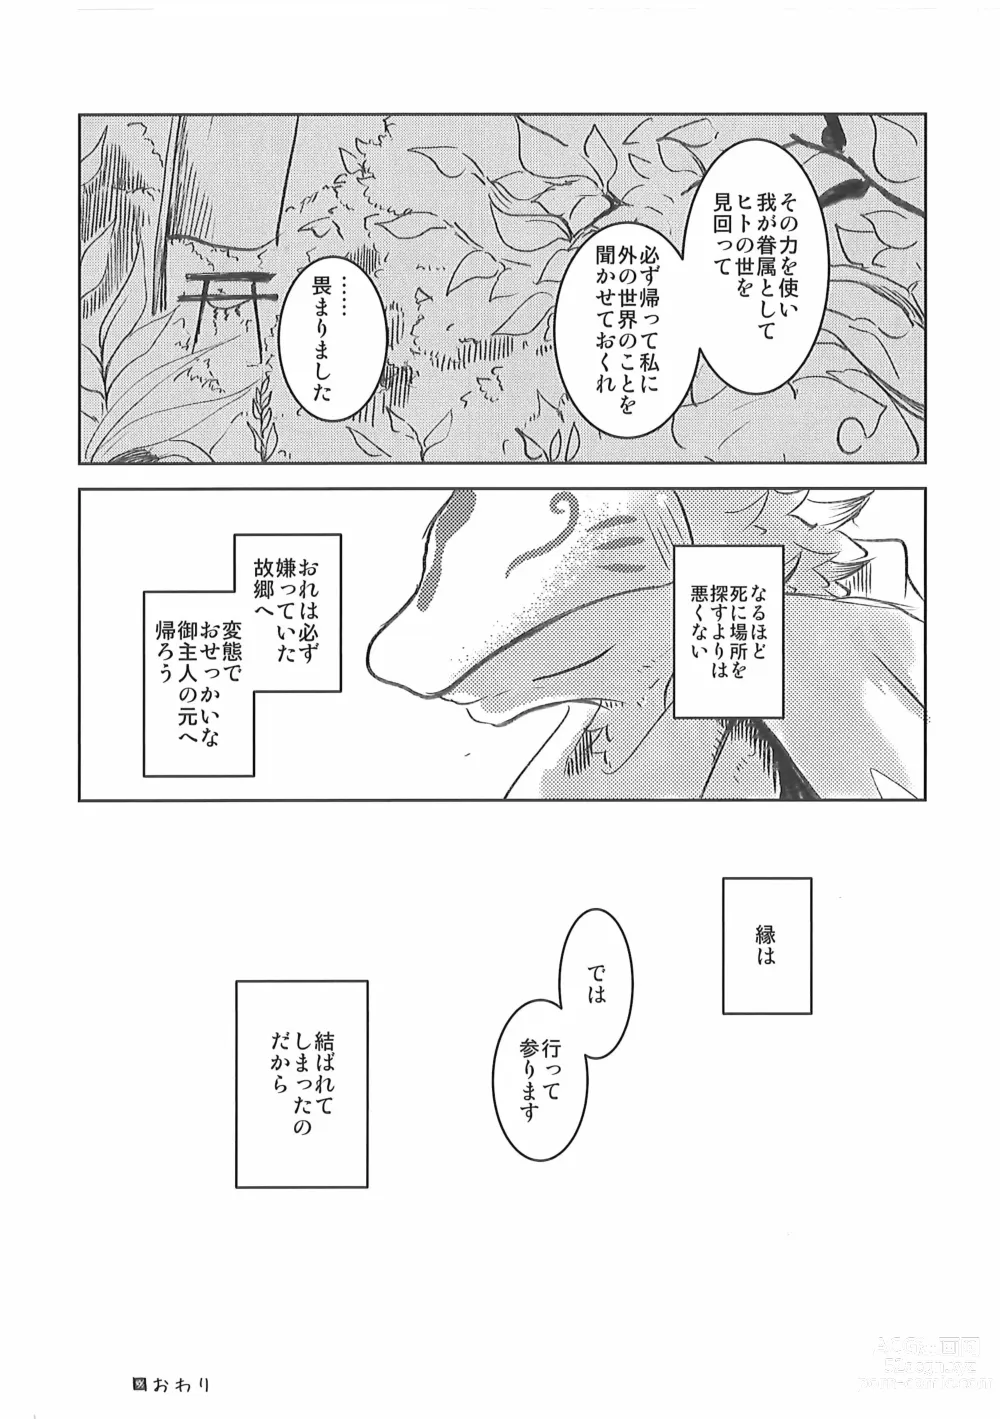 Page 47 of doujinshi Kore mo Goen Toiukoto de